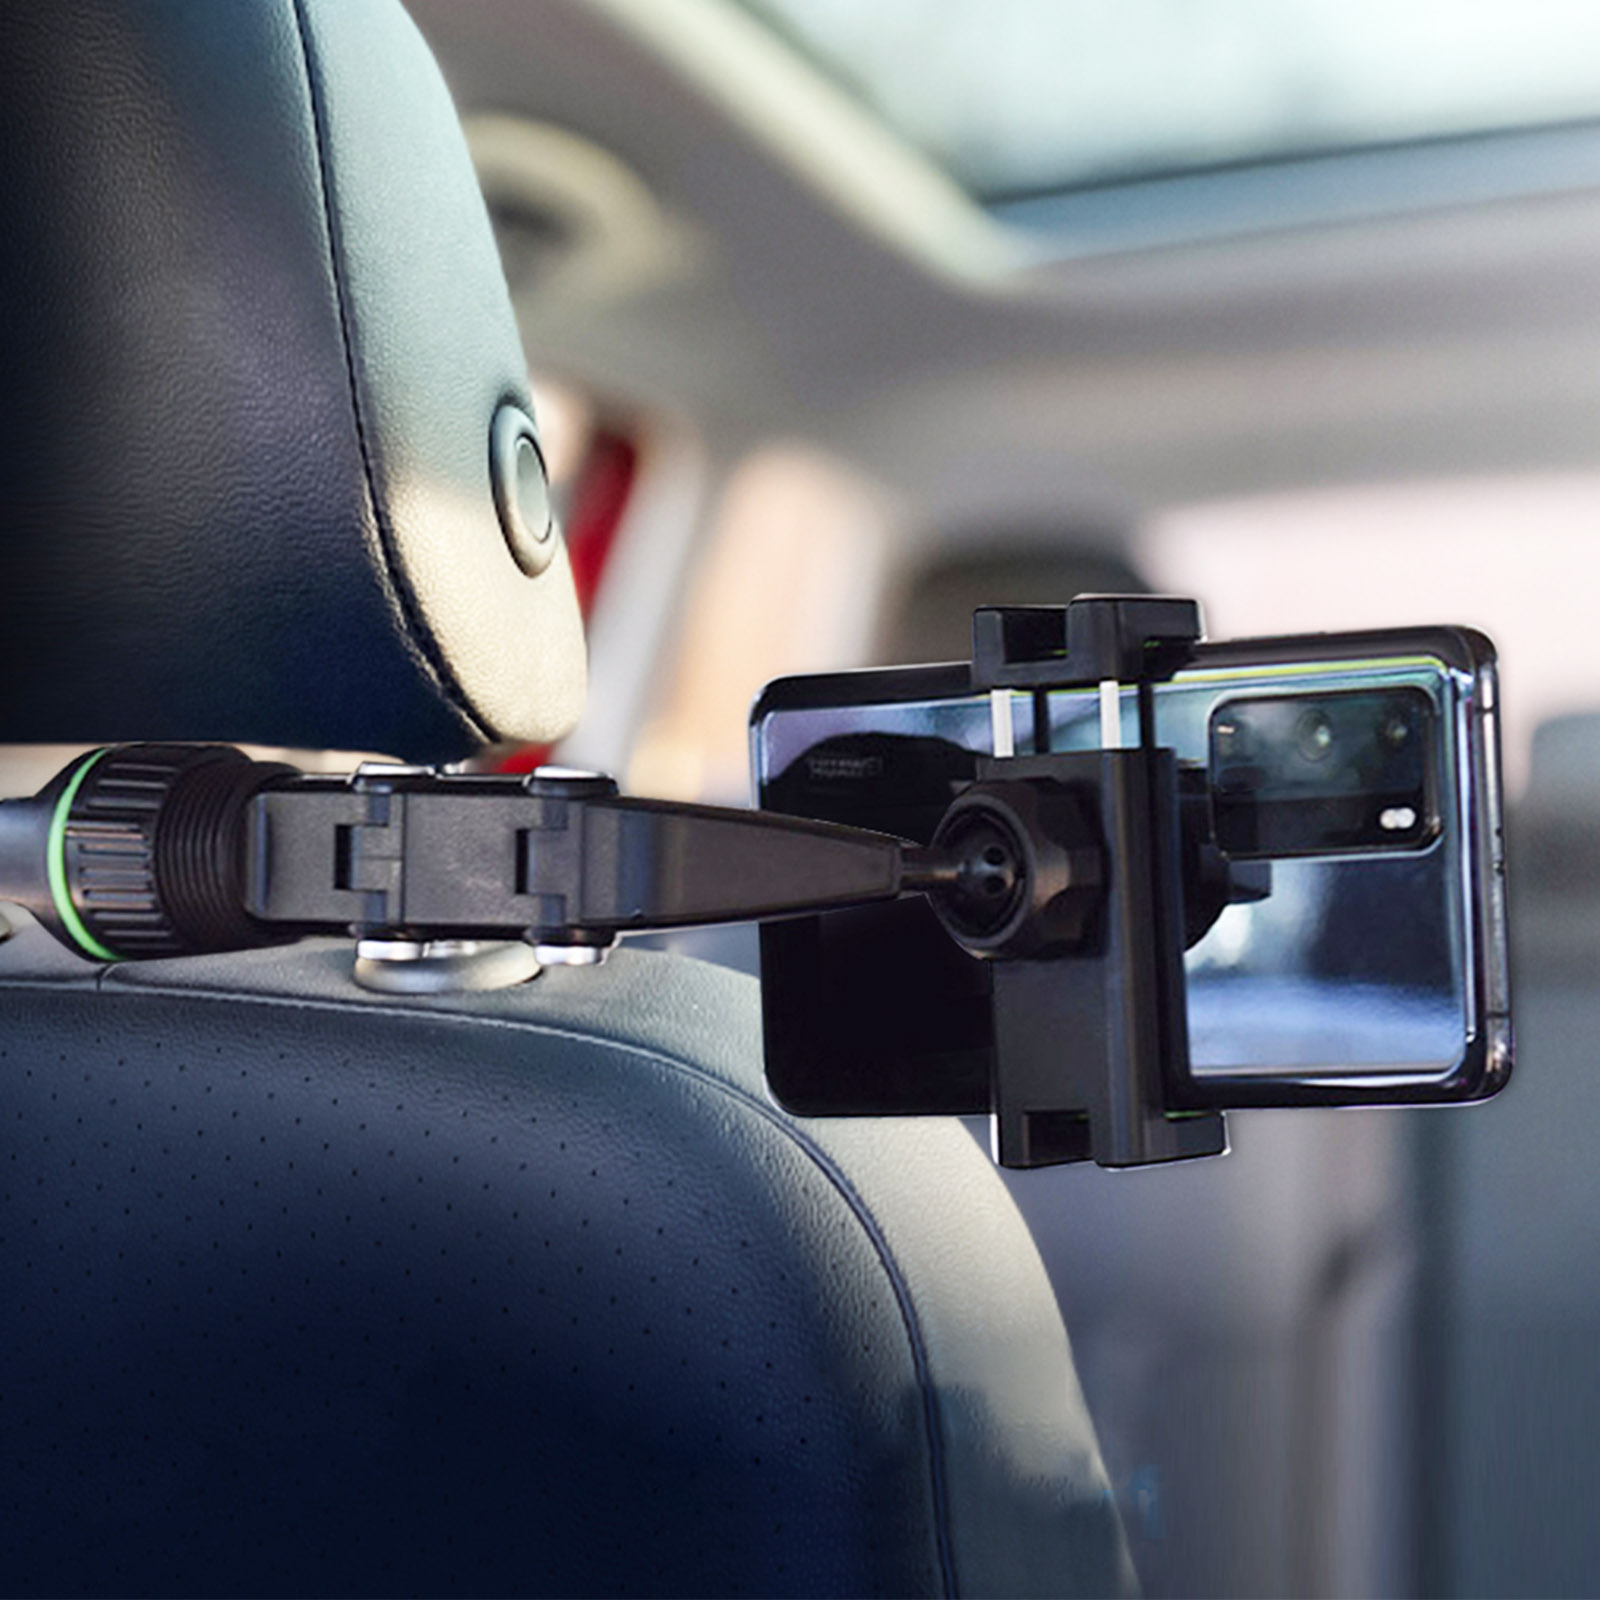 Autohalterung für Smartphone, 360° drehbar und flexibler Arm